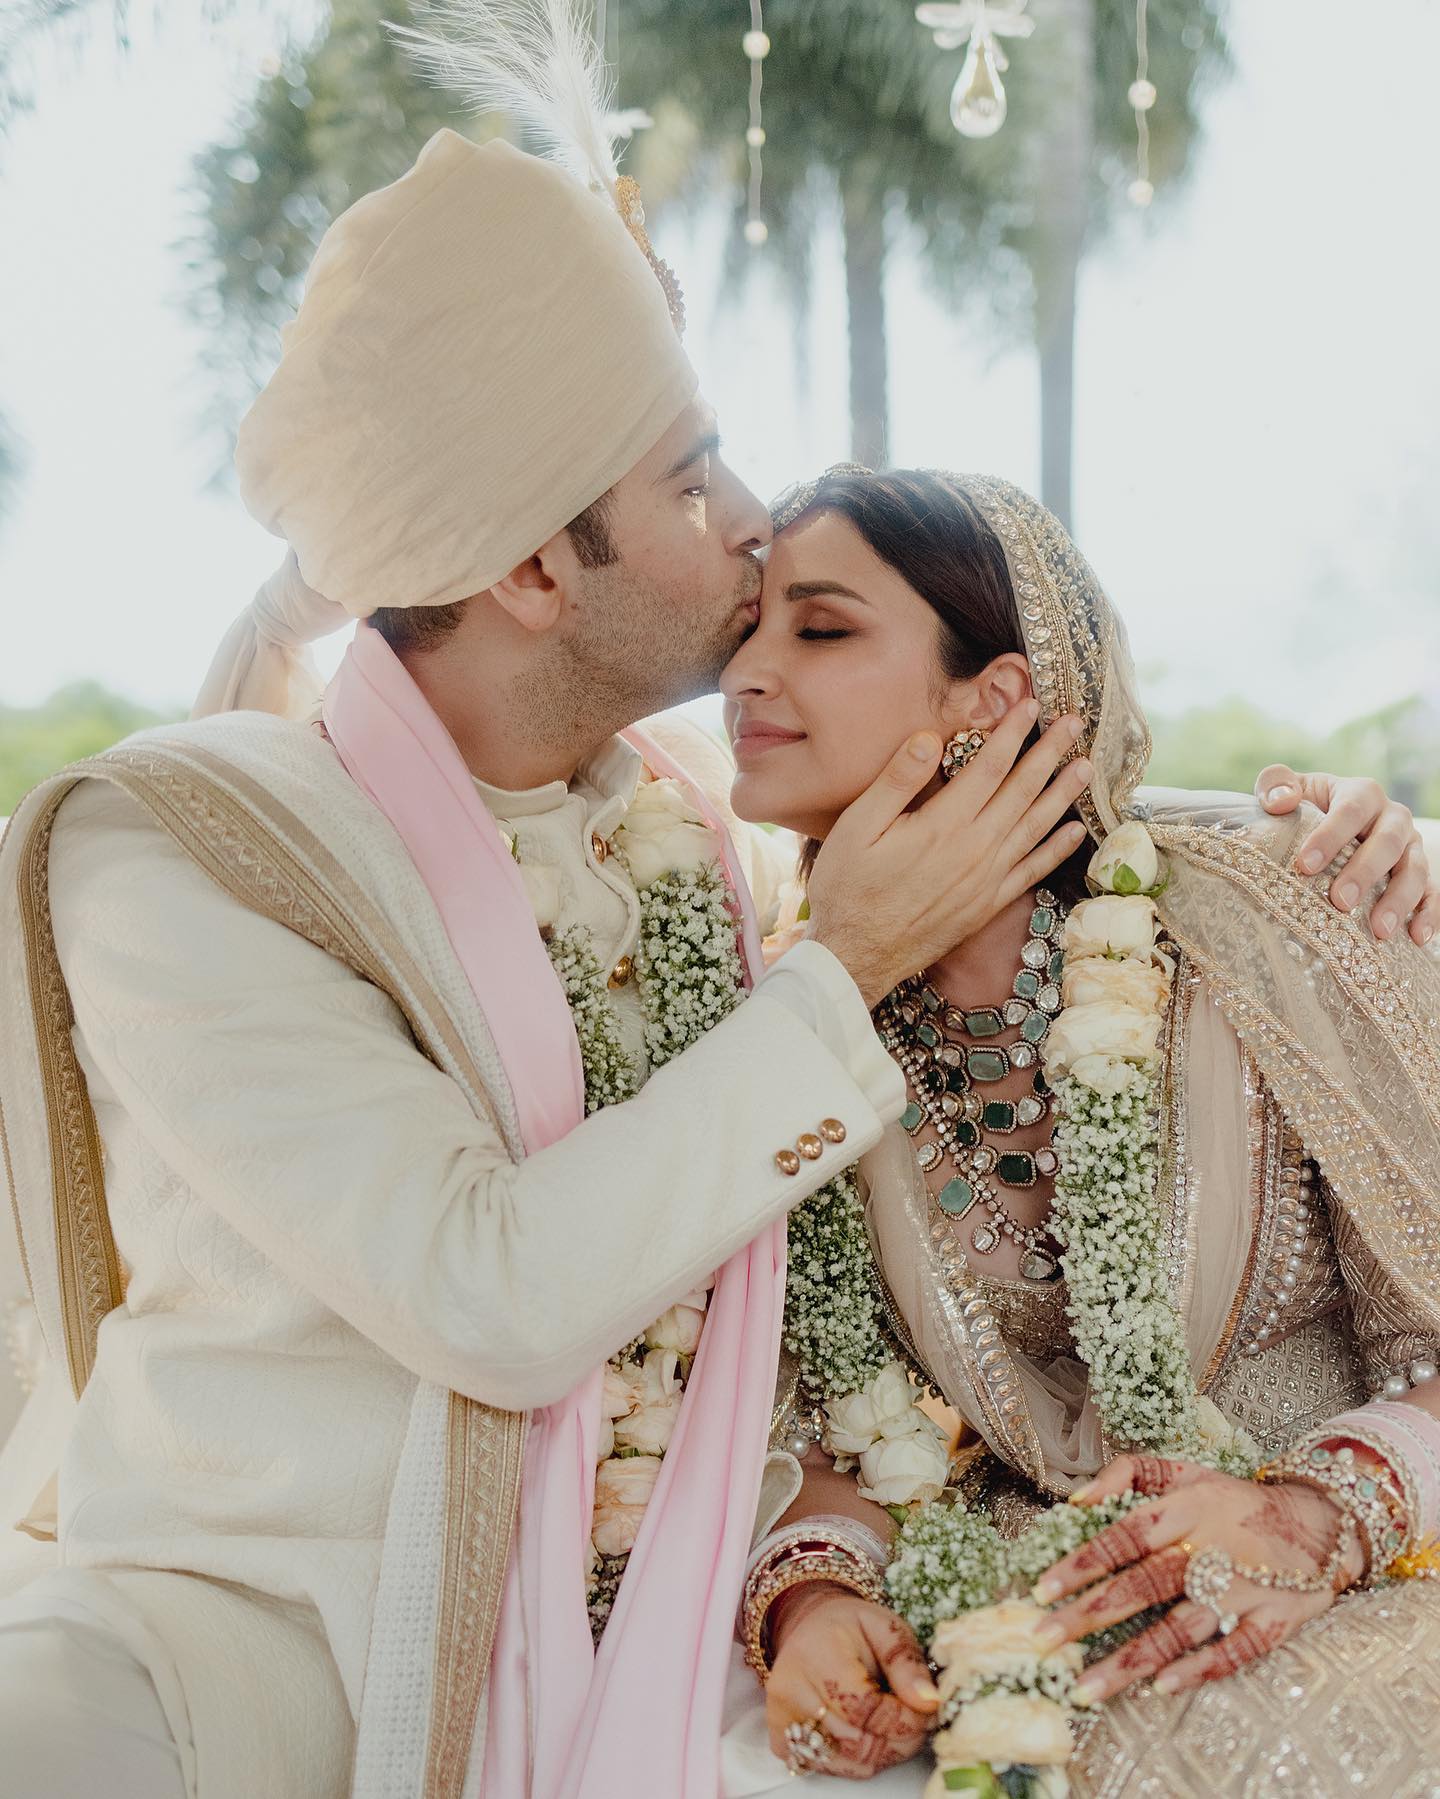 Parineeti Chopra & Raghav Chadha’s Ivory & Gold-Hued Wedding Pictures Are Phenomenal!